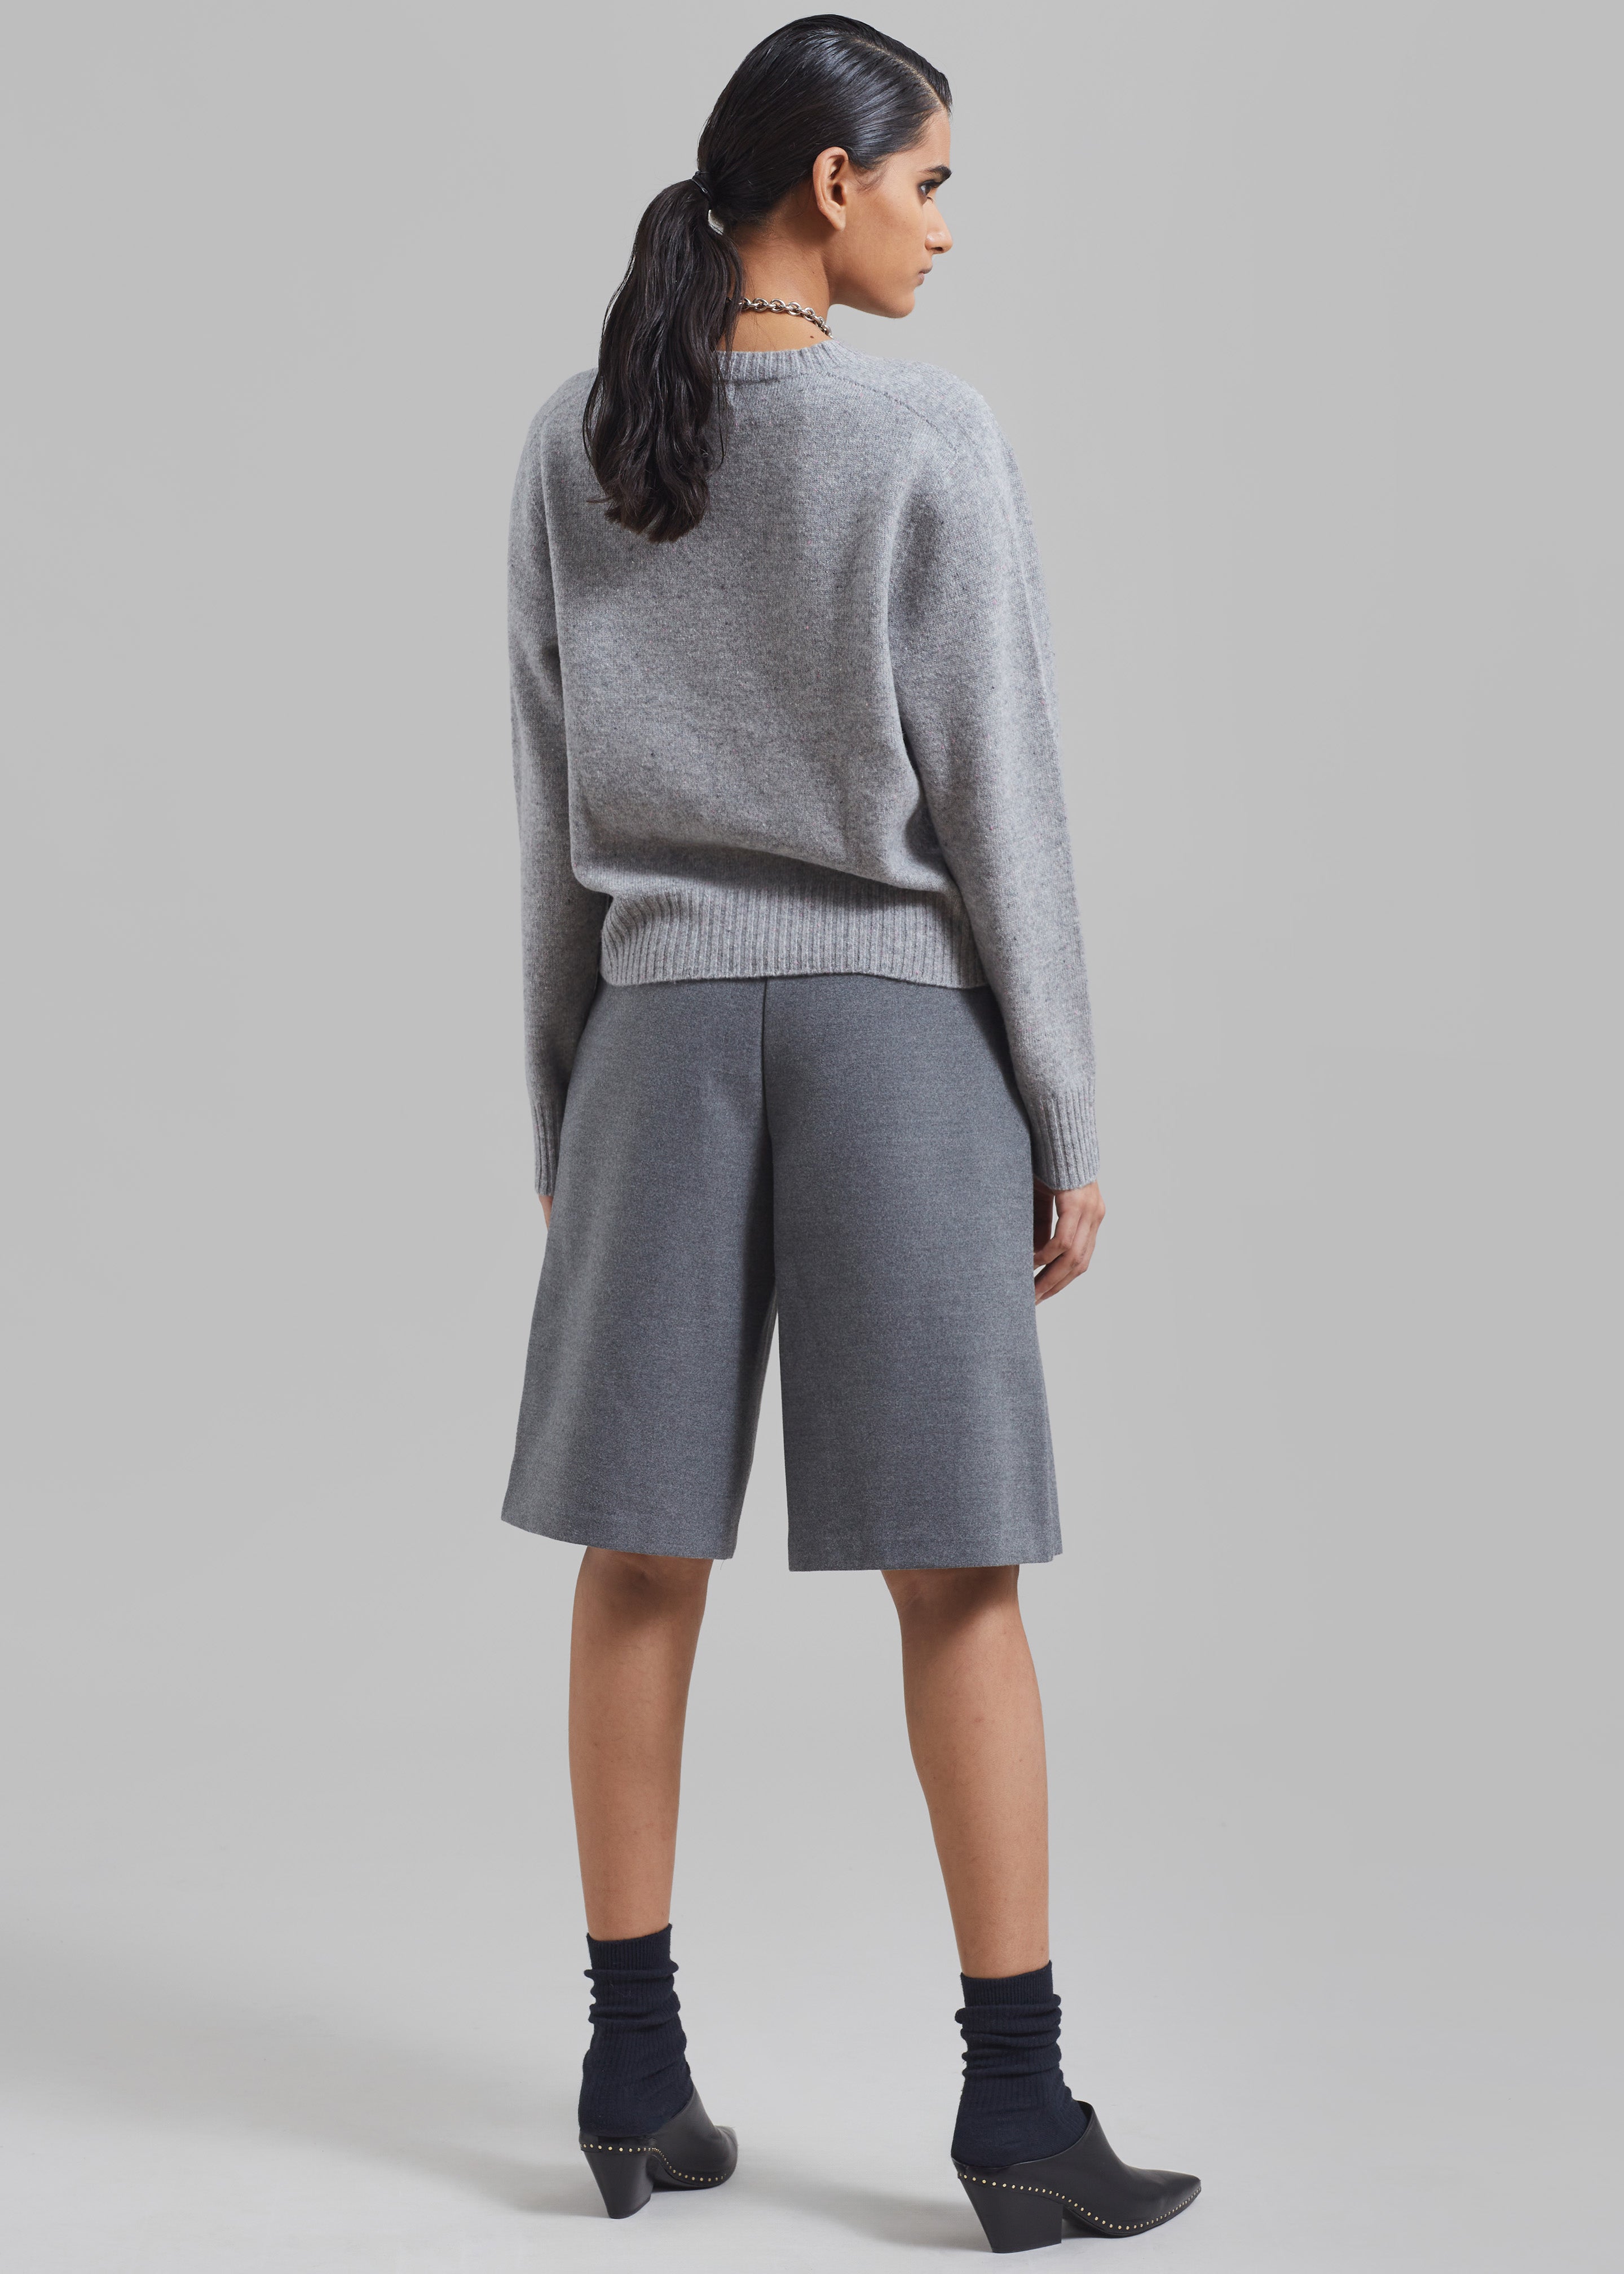 Austen Bermuda Shorts - Grey - 10